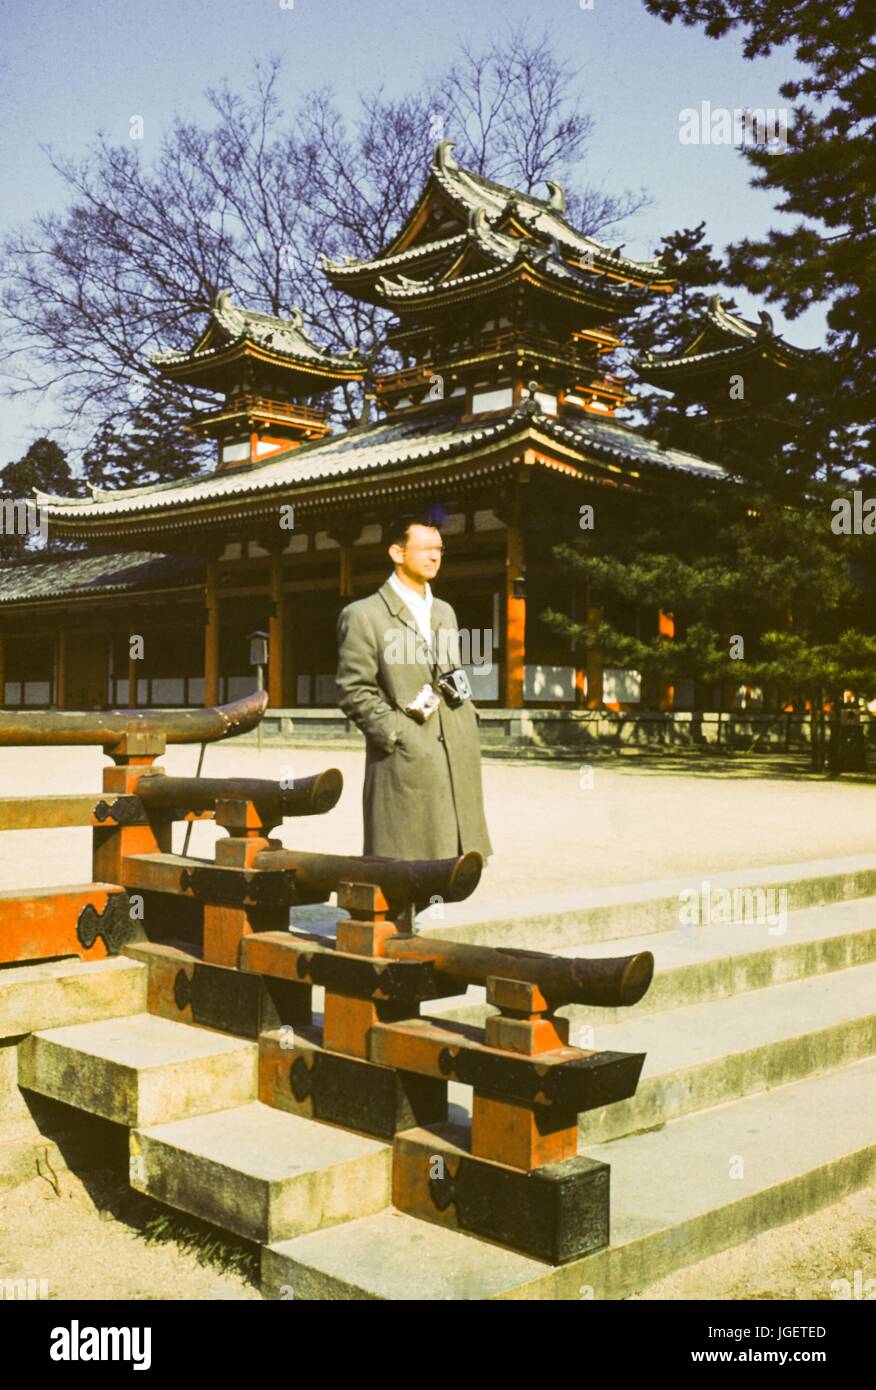 Ein Tourist eine Kodak Brownie Kamera und eine zusätzliche Kamera an den Riemen um den Hals tragen geht vorbei an einem verzierten japanischen Tempel, Japan, 1955. Stockfoto